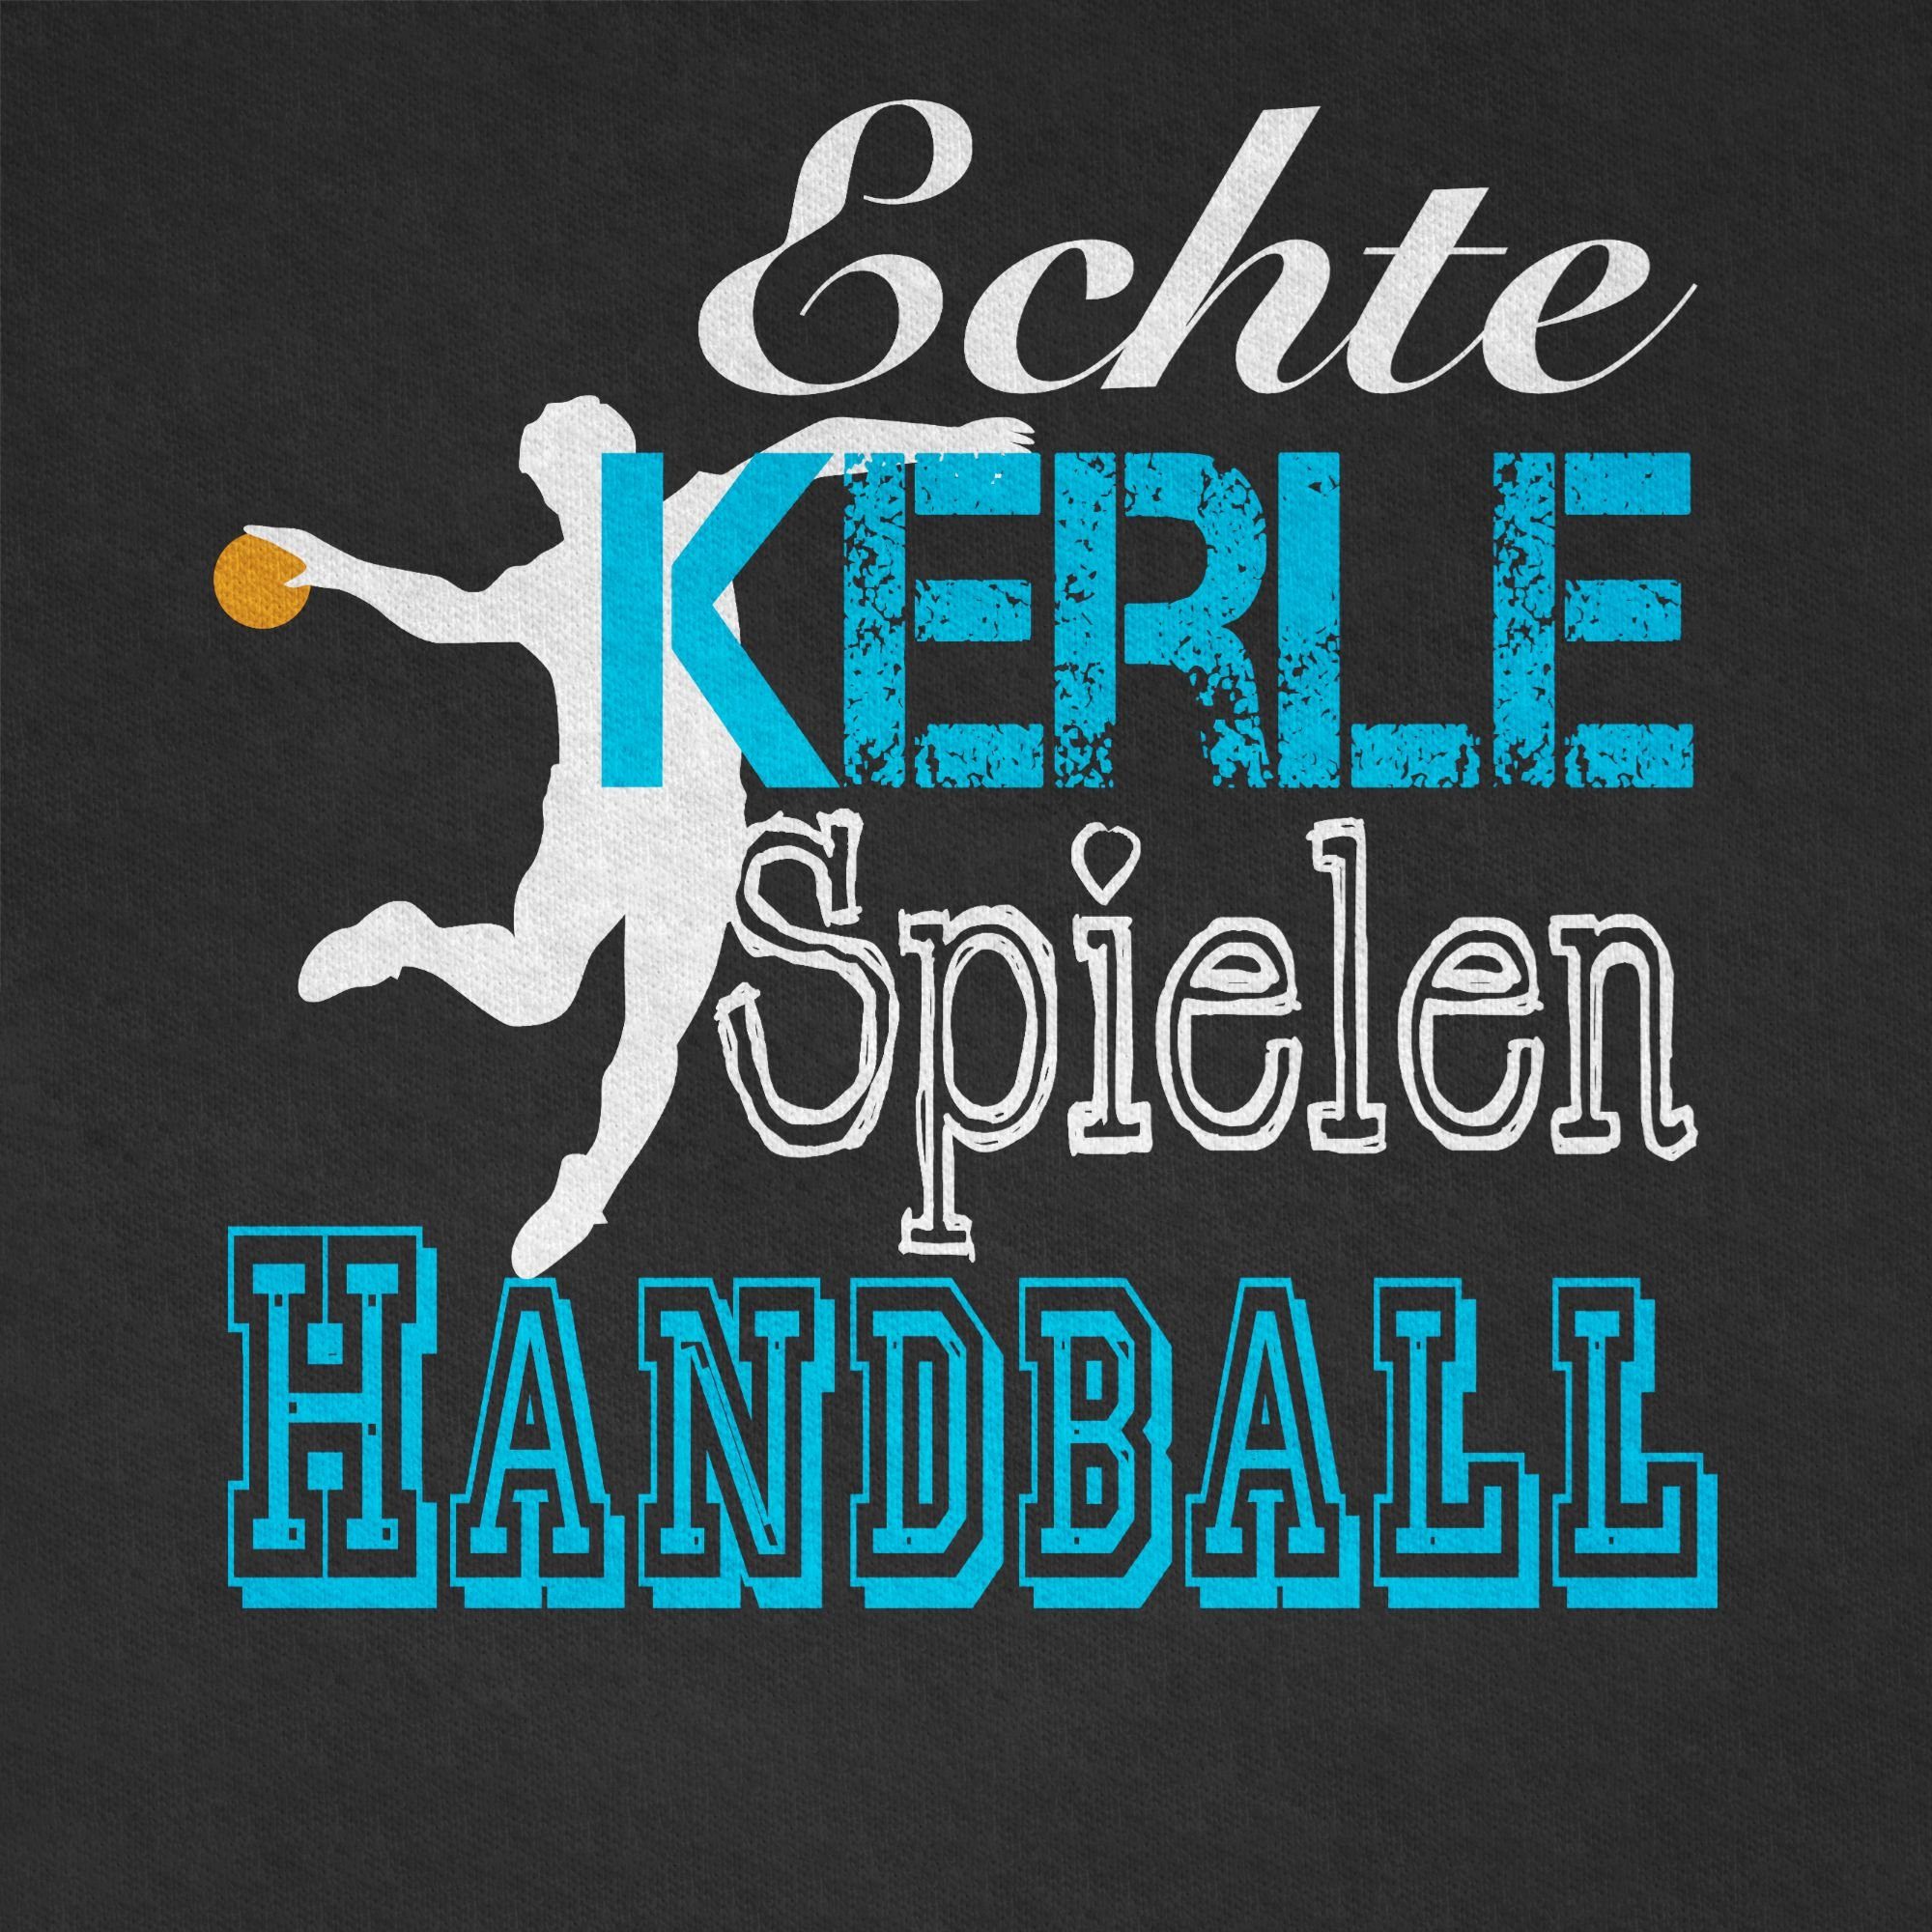 Shirtracer T-Shirt Echte 2 weiß Handball Kleidung Schwarz Sport Spielen Kinder Kerle